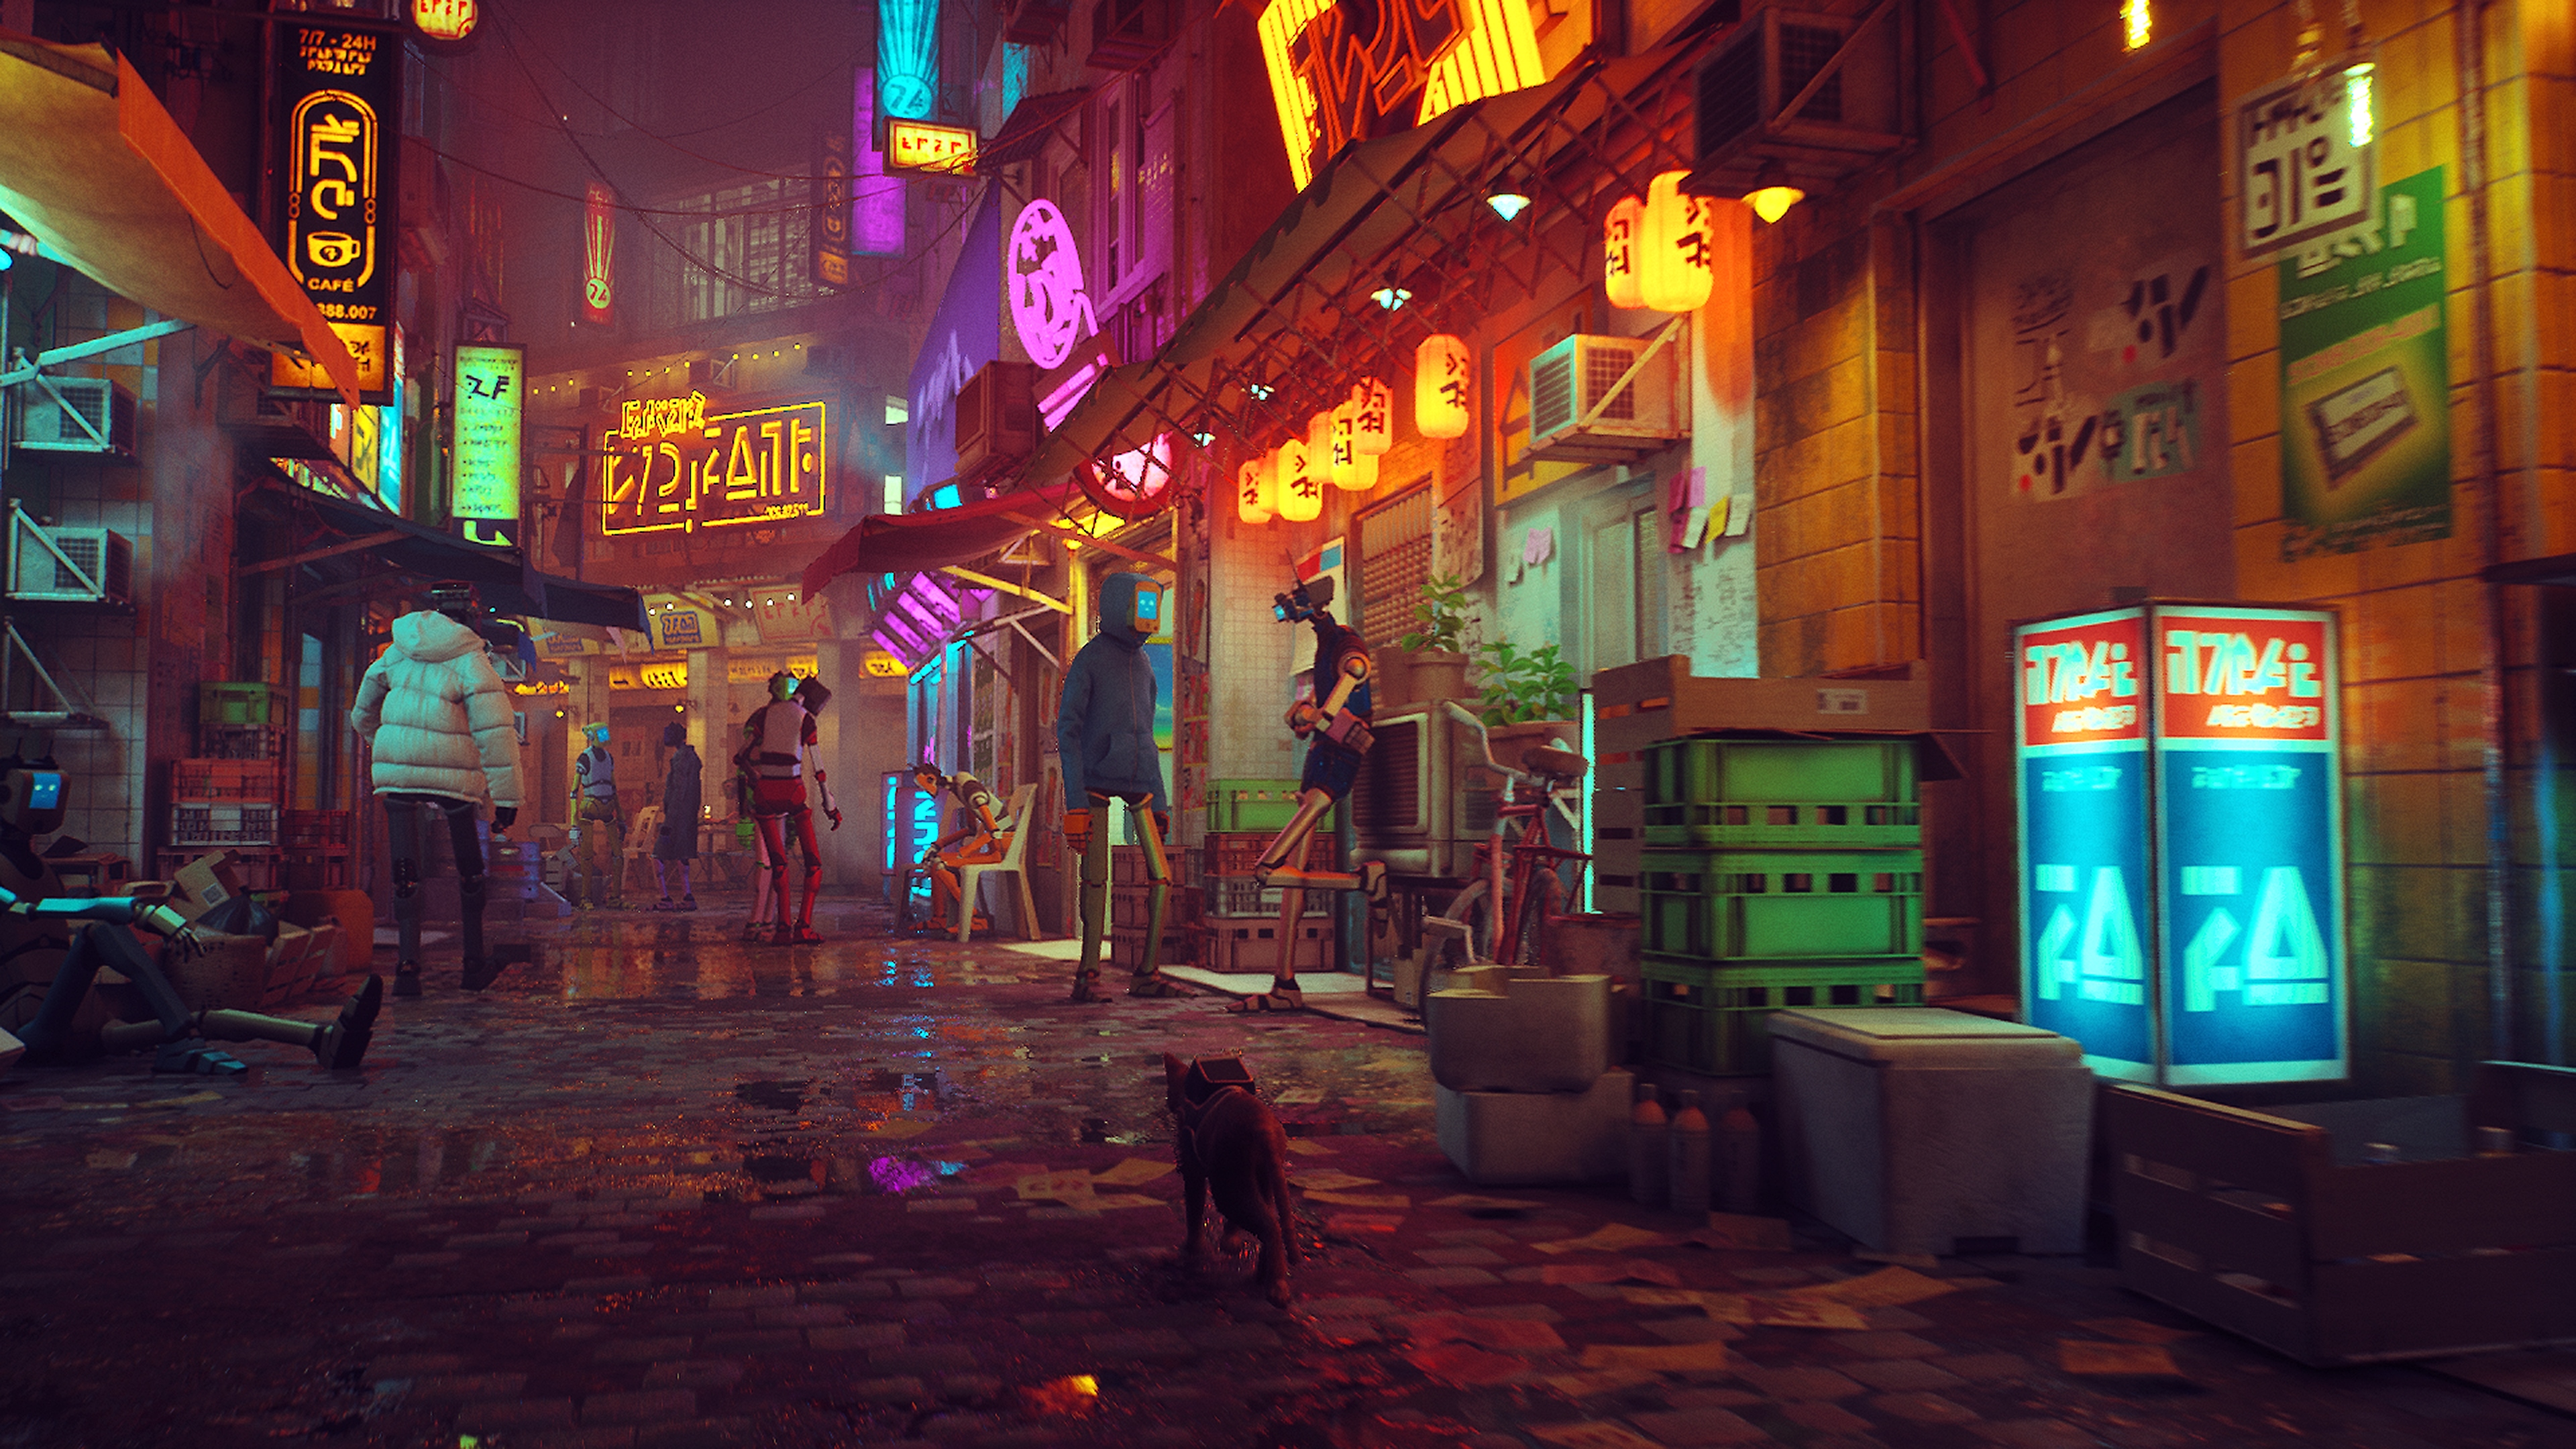 Snímek obrazovky ze hry Stray zobrazující neony osvětlenou ulici